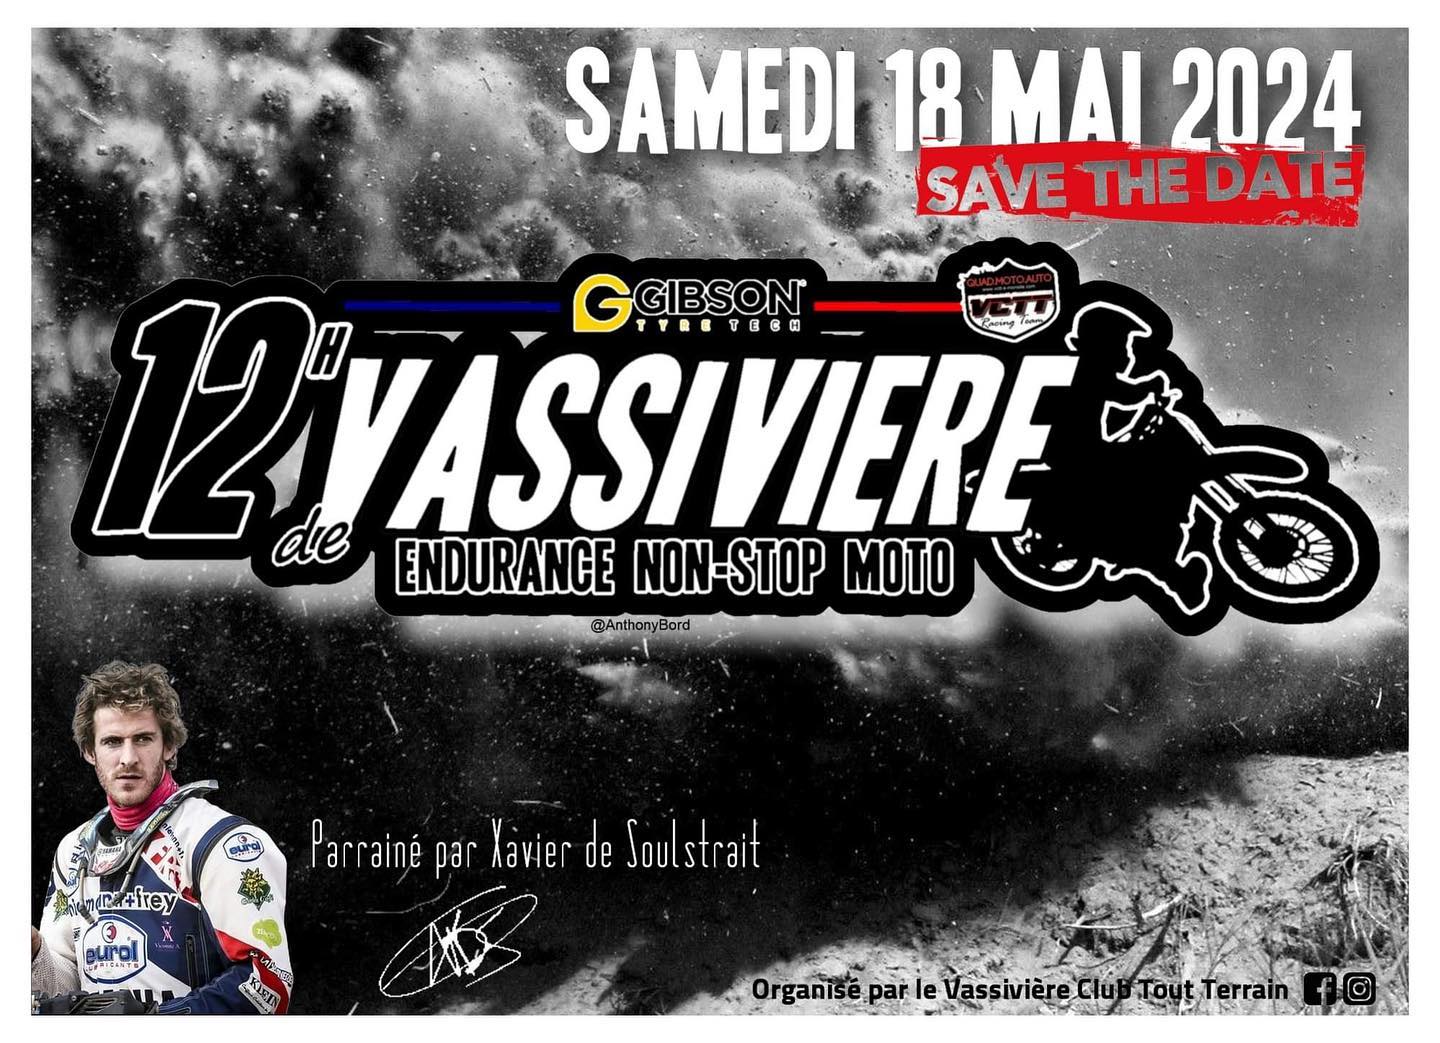 Les 12h non-stop de Vassivière : endurance Quad